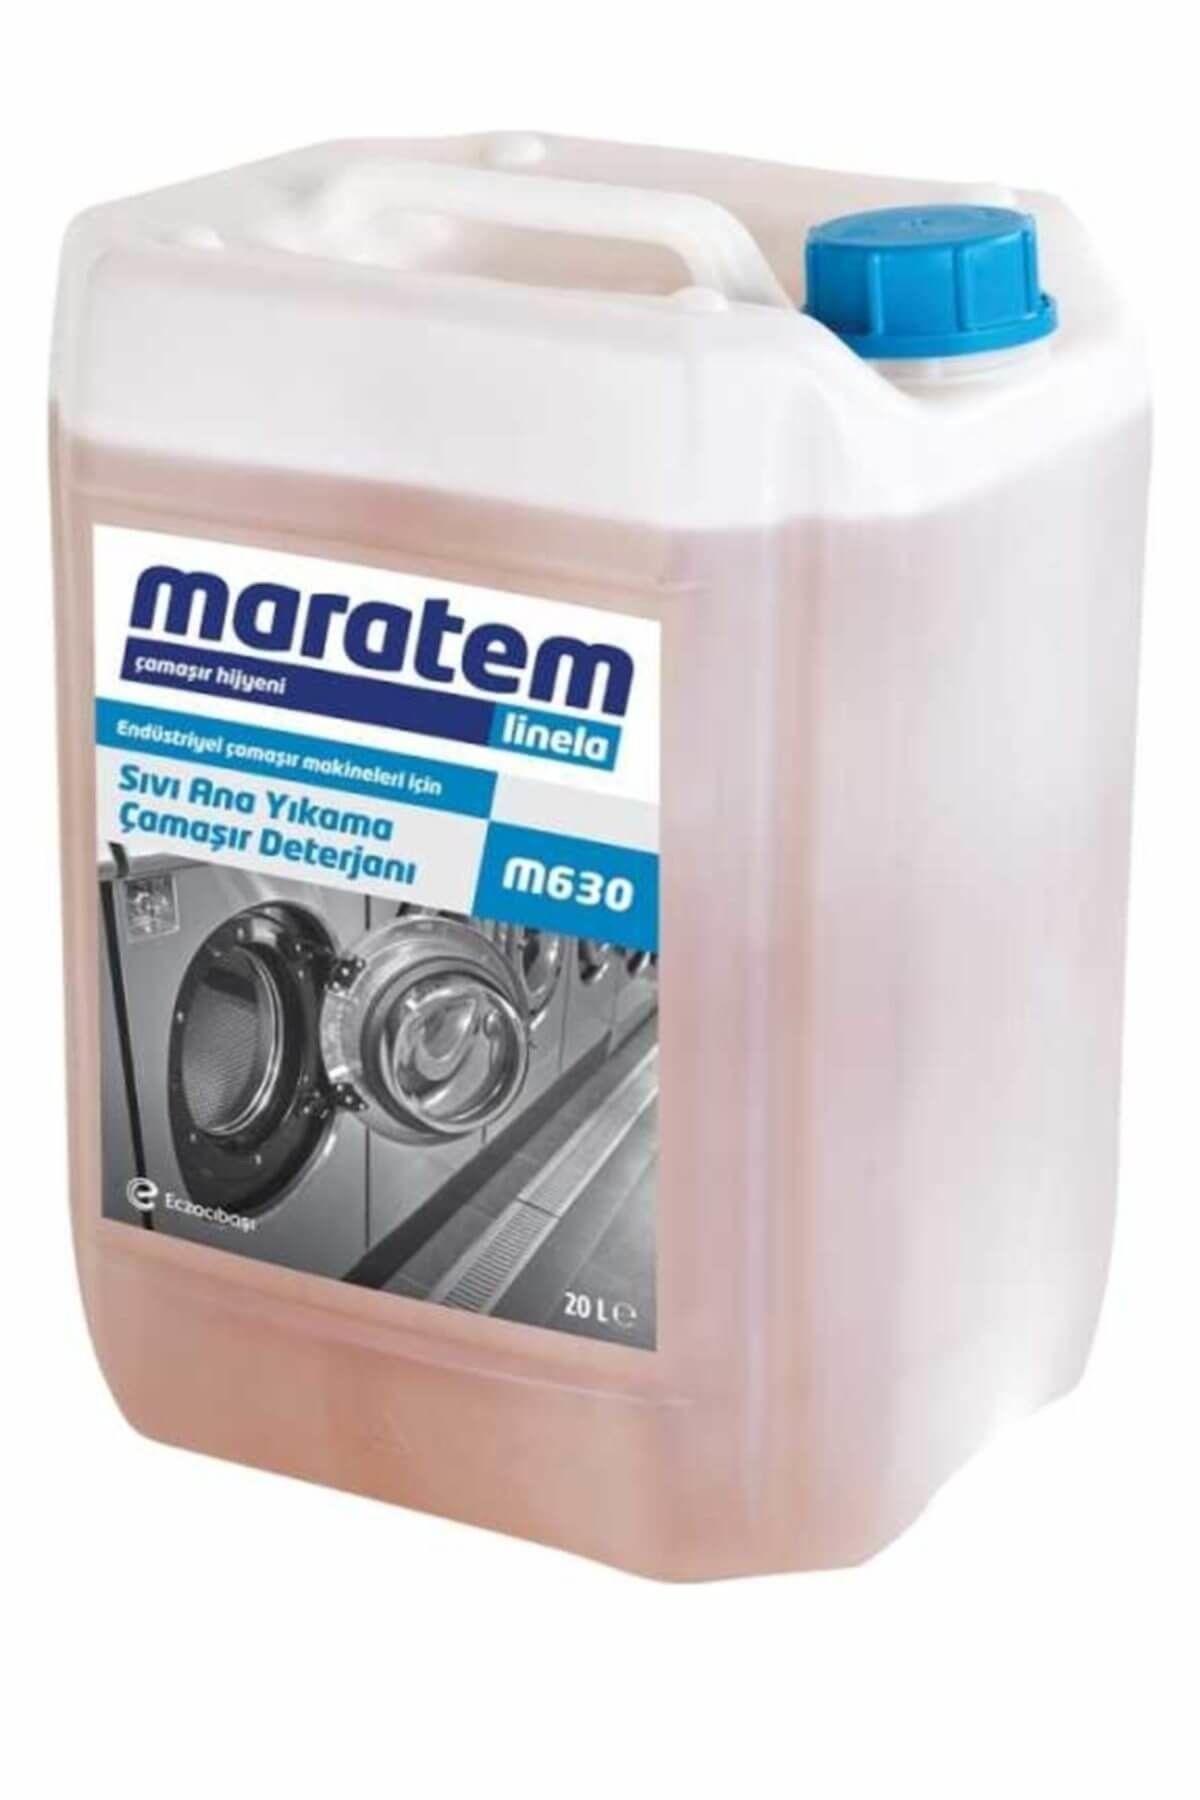 Maratem Maratem M630 Ana Yıkama Sıvı Çamaşır Deterjanı 20lt